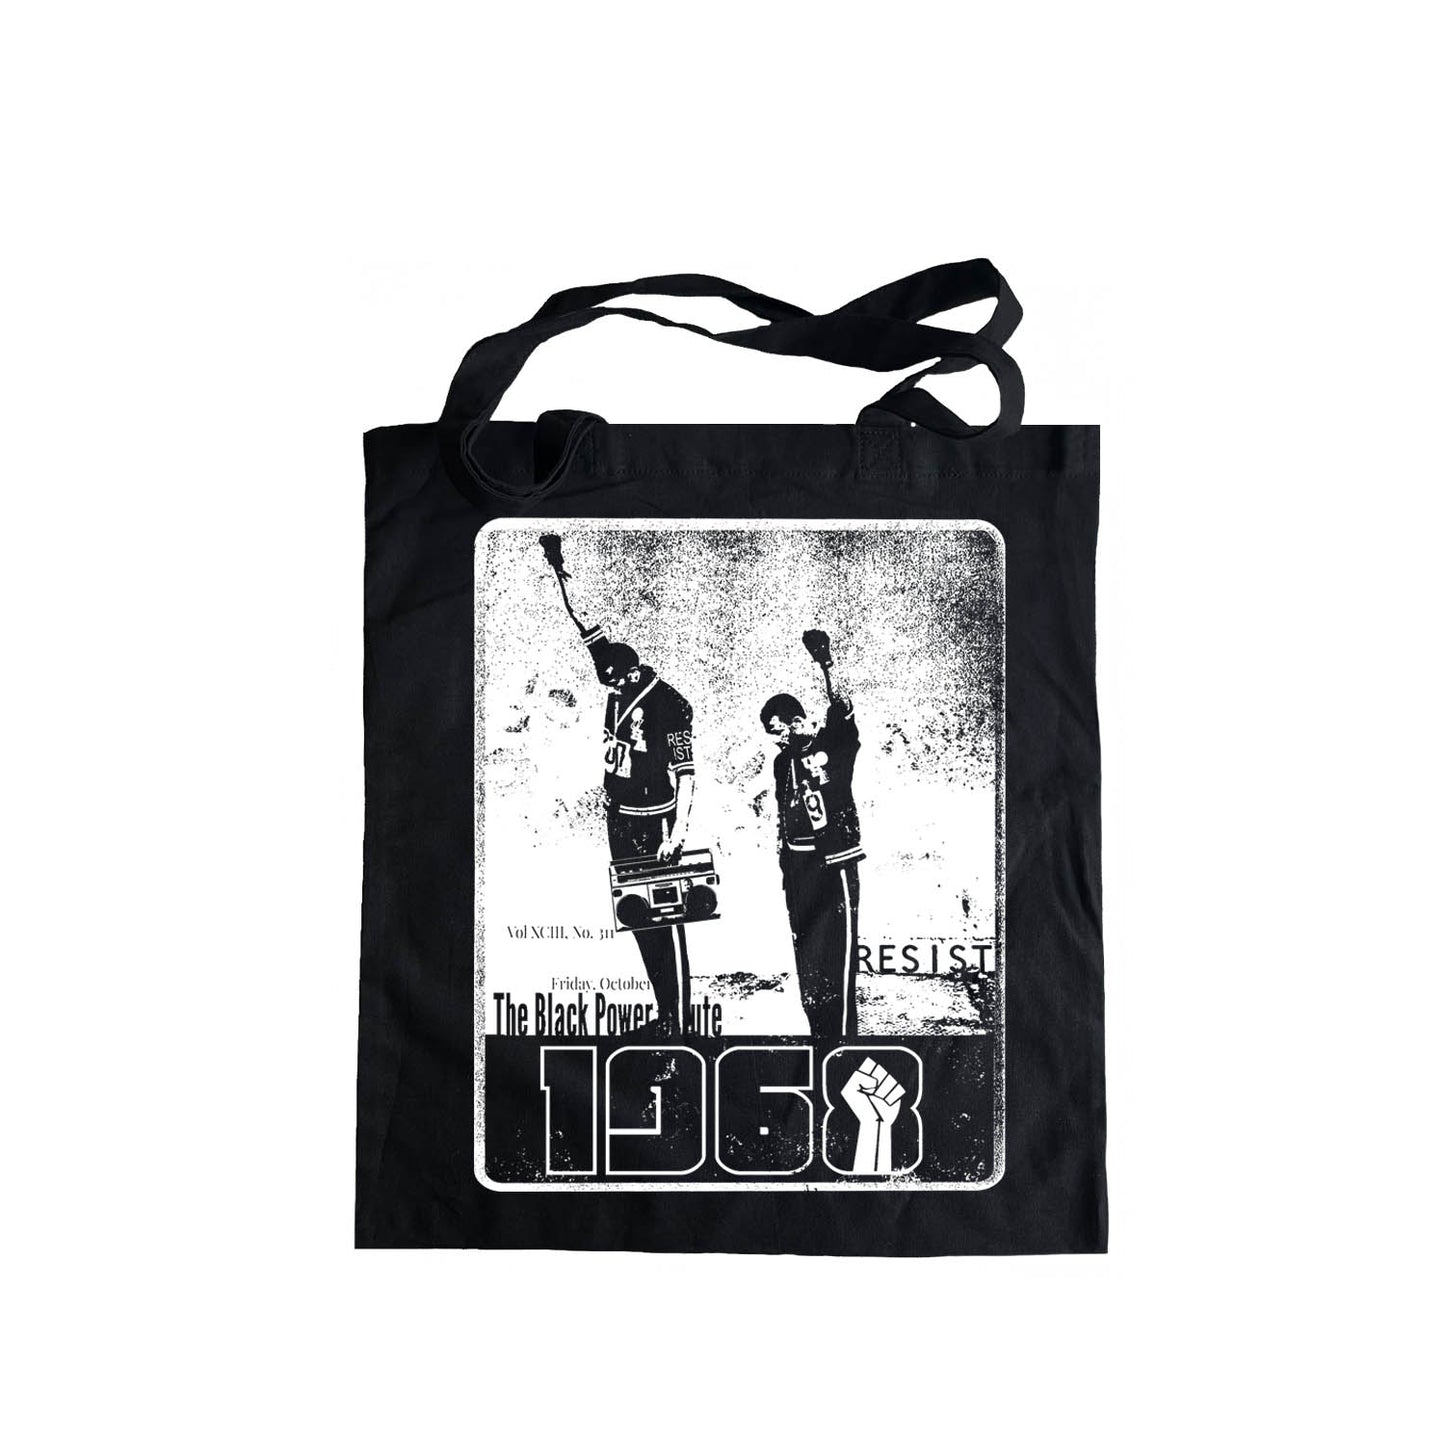 1968 Black Power Salute Tote Bag, Black Lives Matter, Social Justice